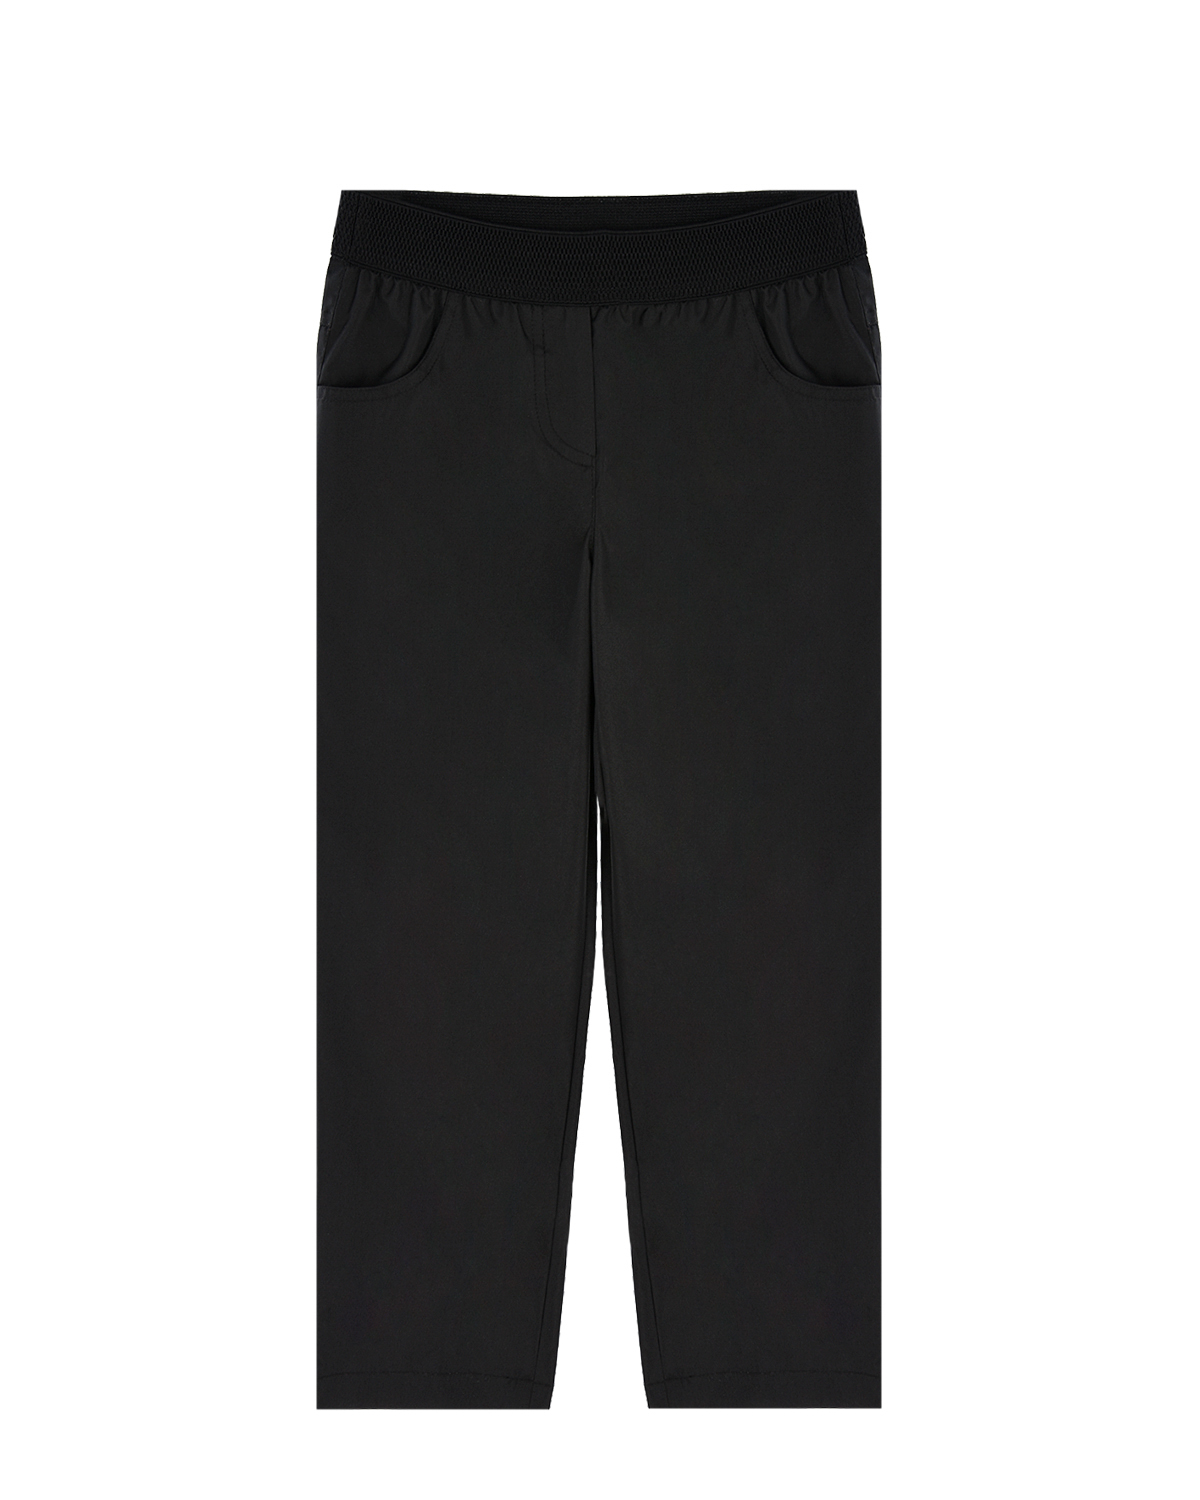 Черные утепленные брюки Dan Maralex детские, размер 116, цвет черный